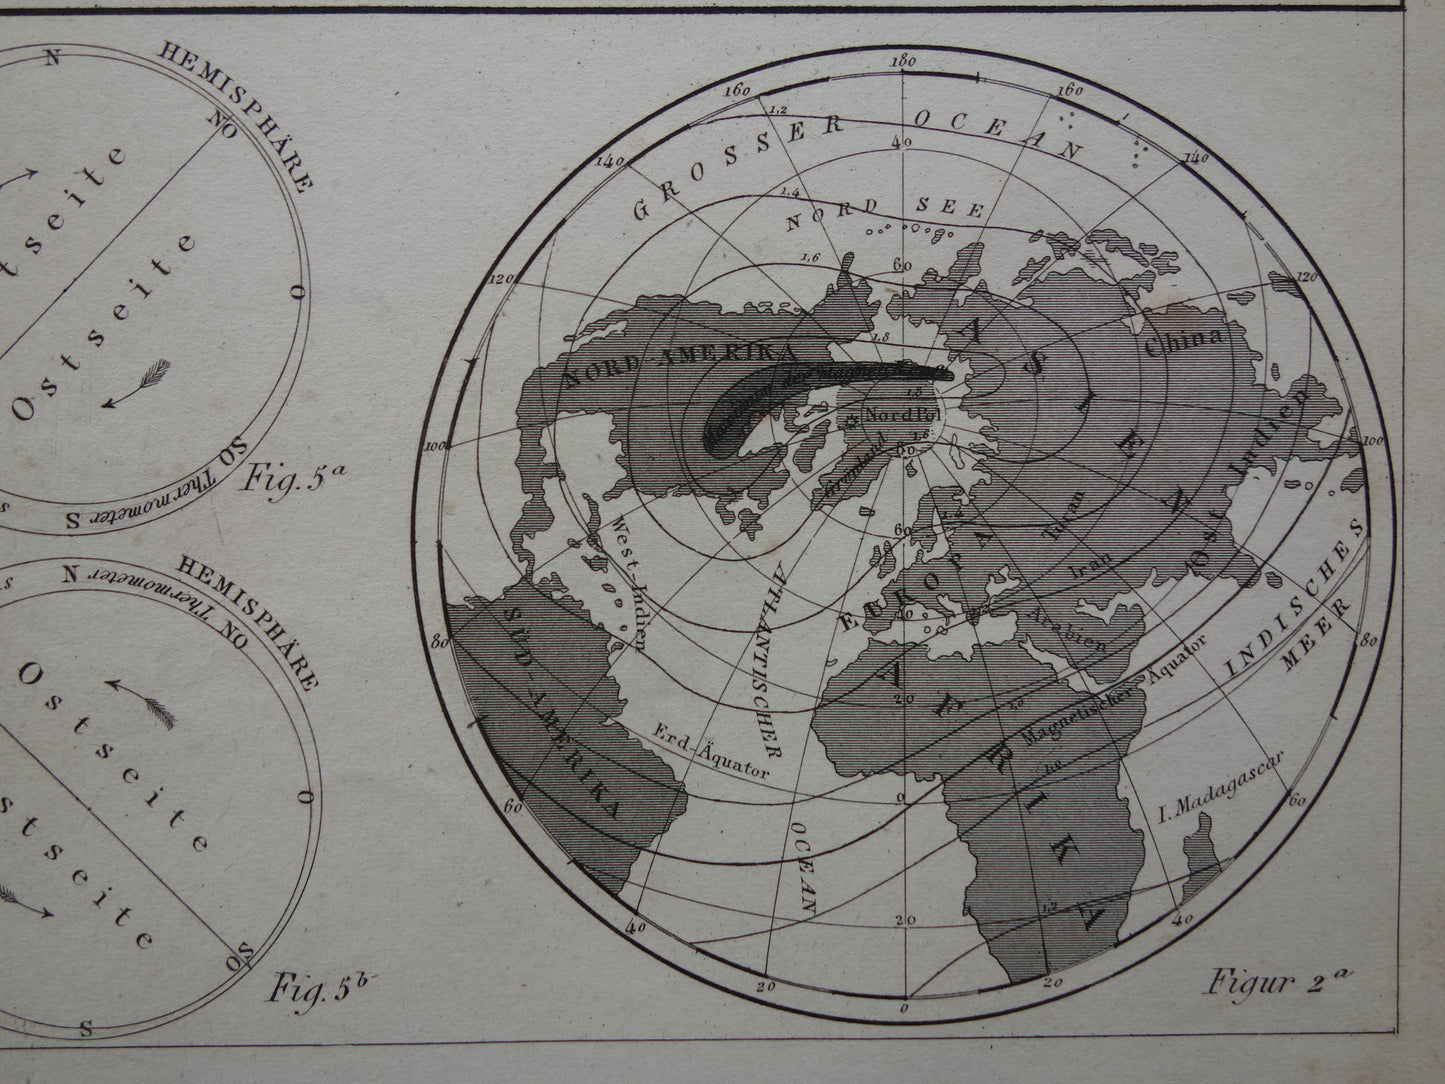 Oude Kaart van het aardmagnetisch veld uit 1849 originele antieke wereldkaart magnetisme polen noordpool zuidpool